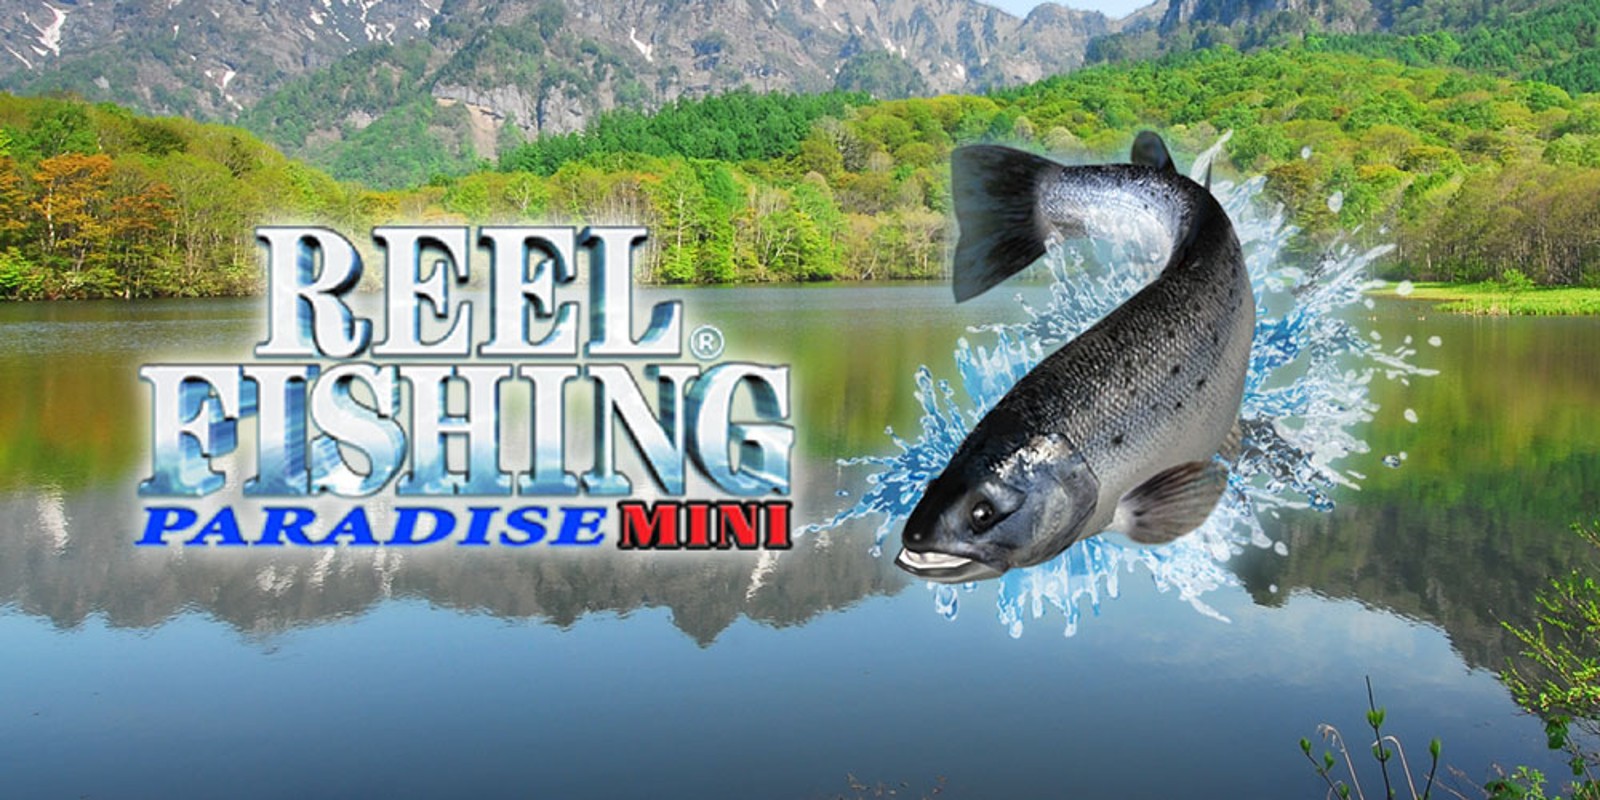 Reel Fishing® 3D Paradise Mini